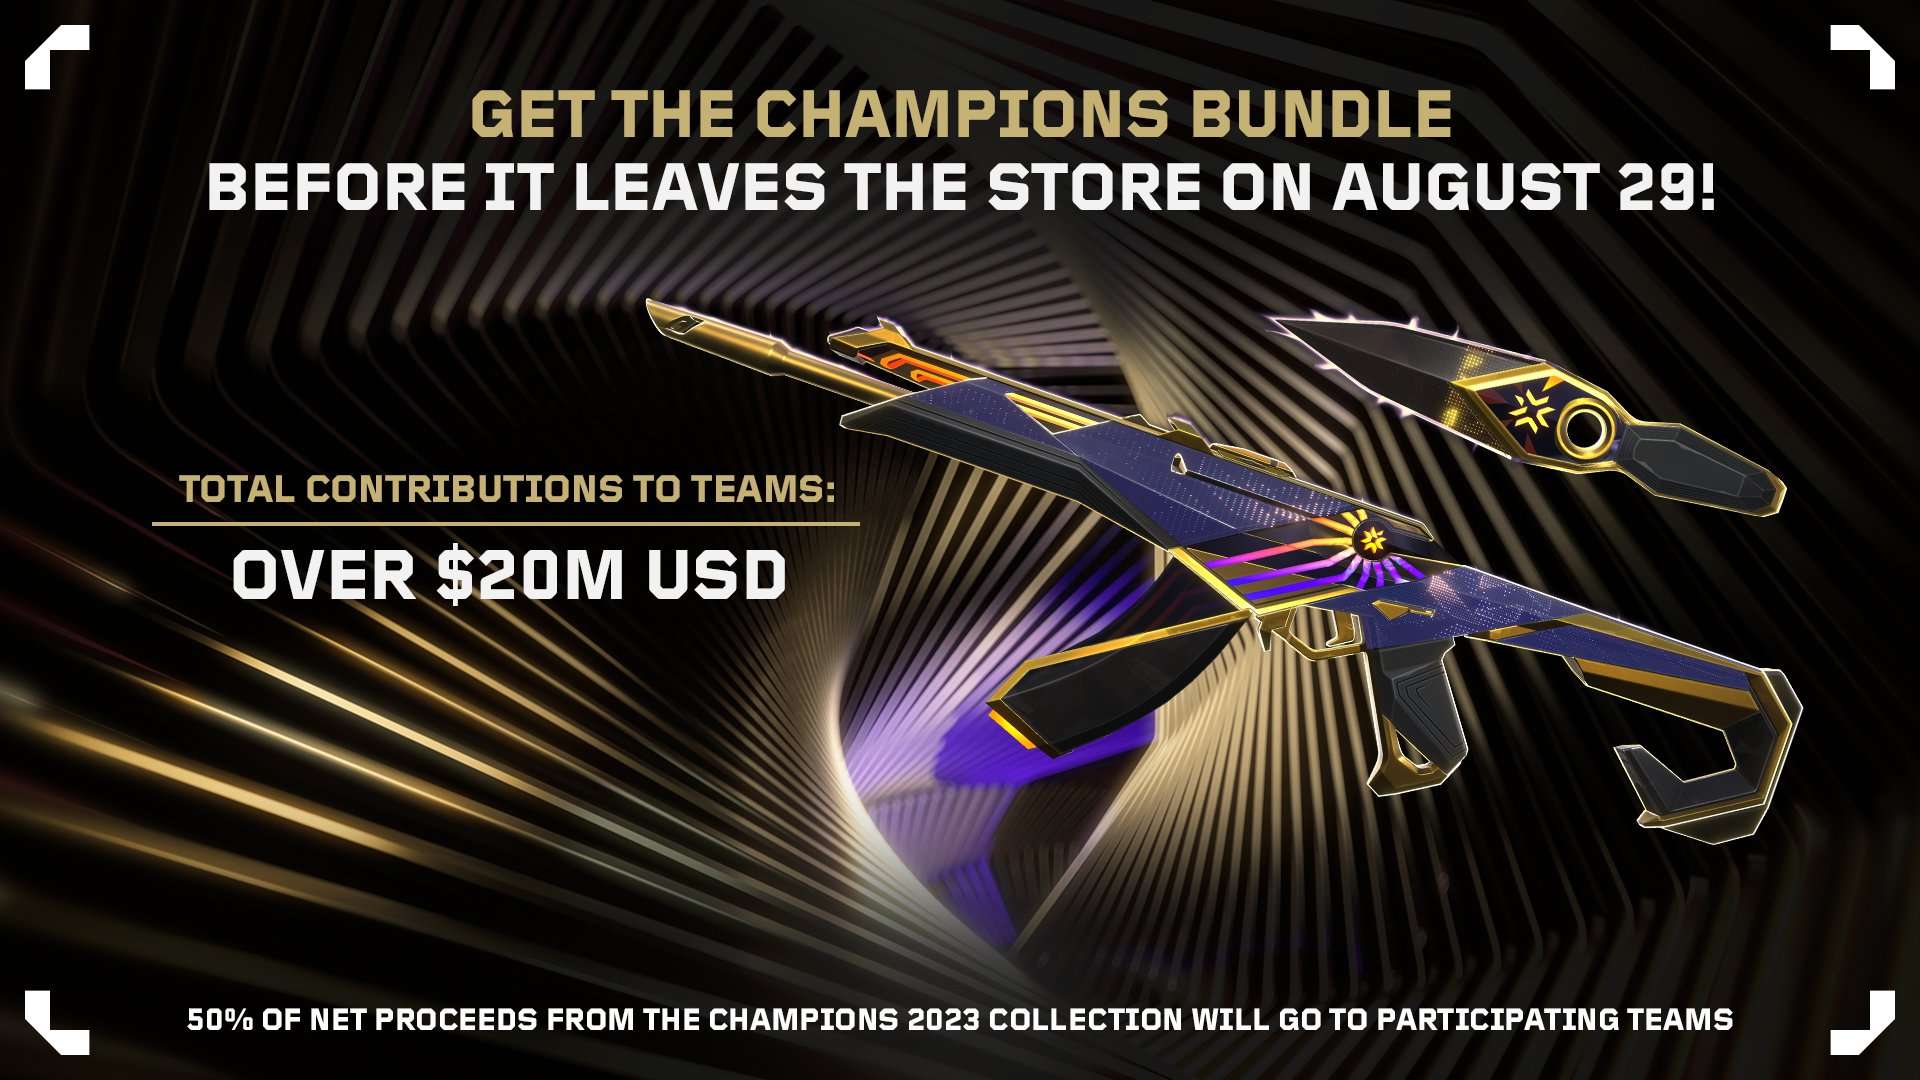 Champions 2023 Bundle đã giúp Riot Games cán mốc 40 triệu USD doanh thu, một nửa trong số đó là 20 triệu USD sẽ được chuyển đến tay các đội tuyển tham dự giải đấu.